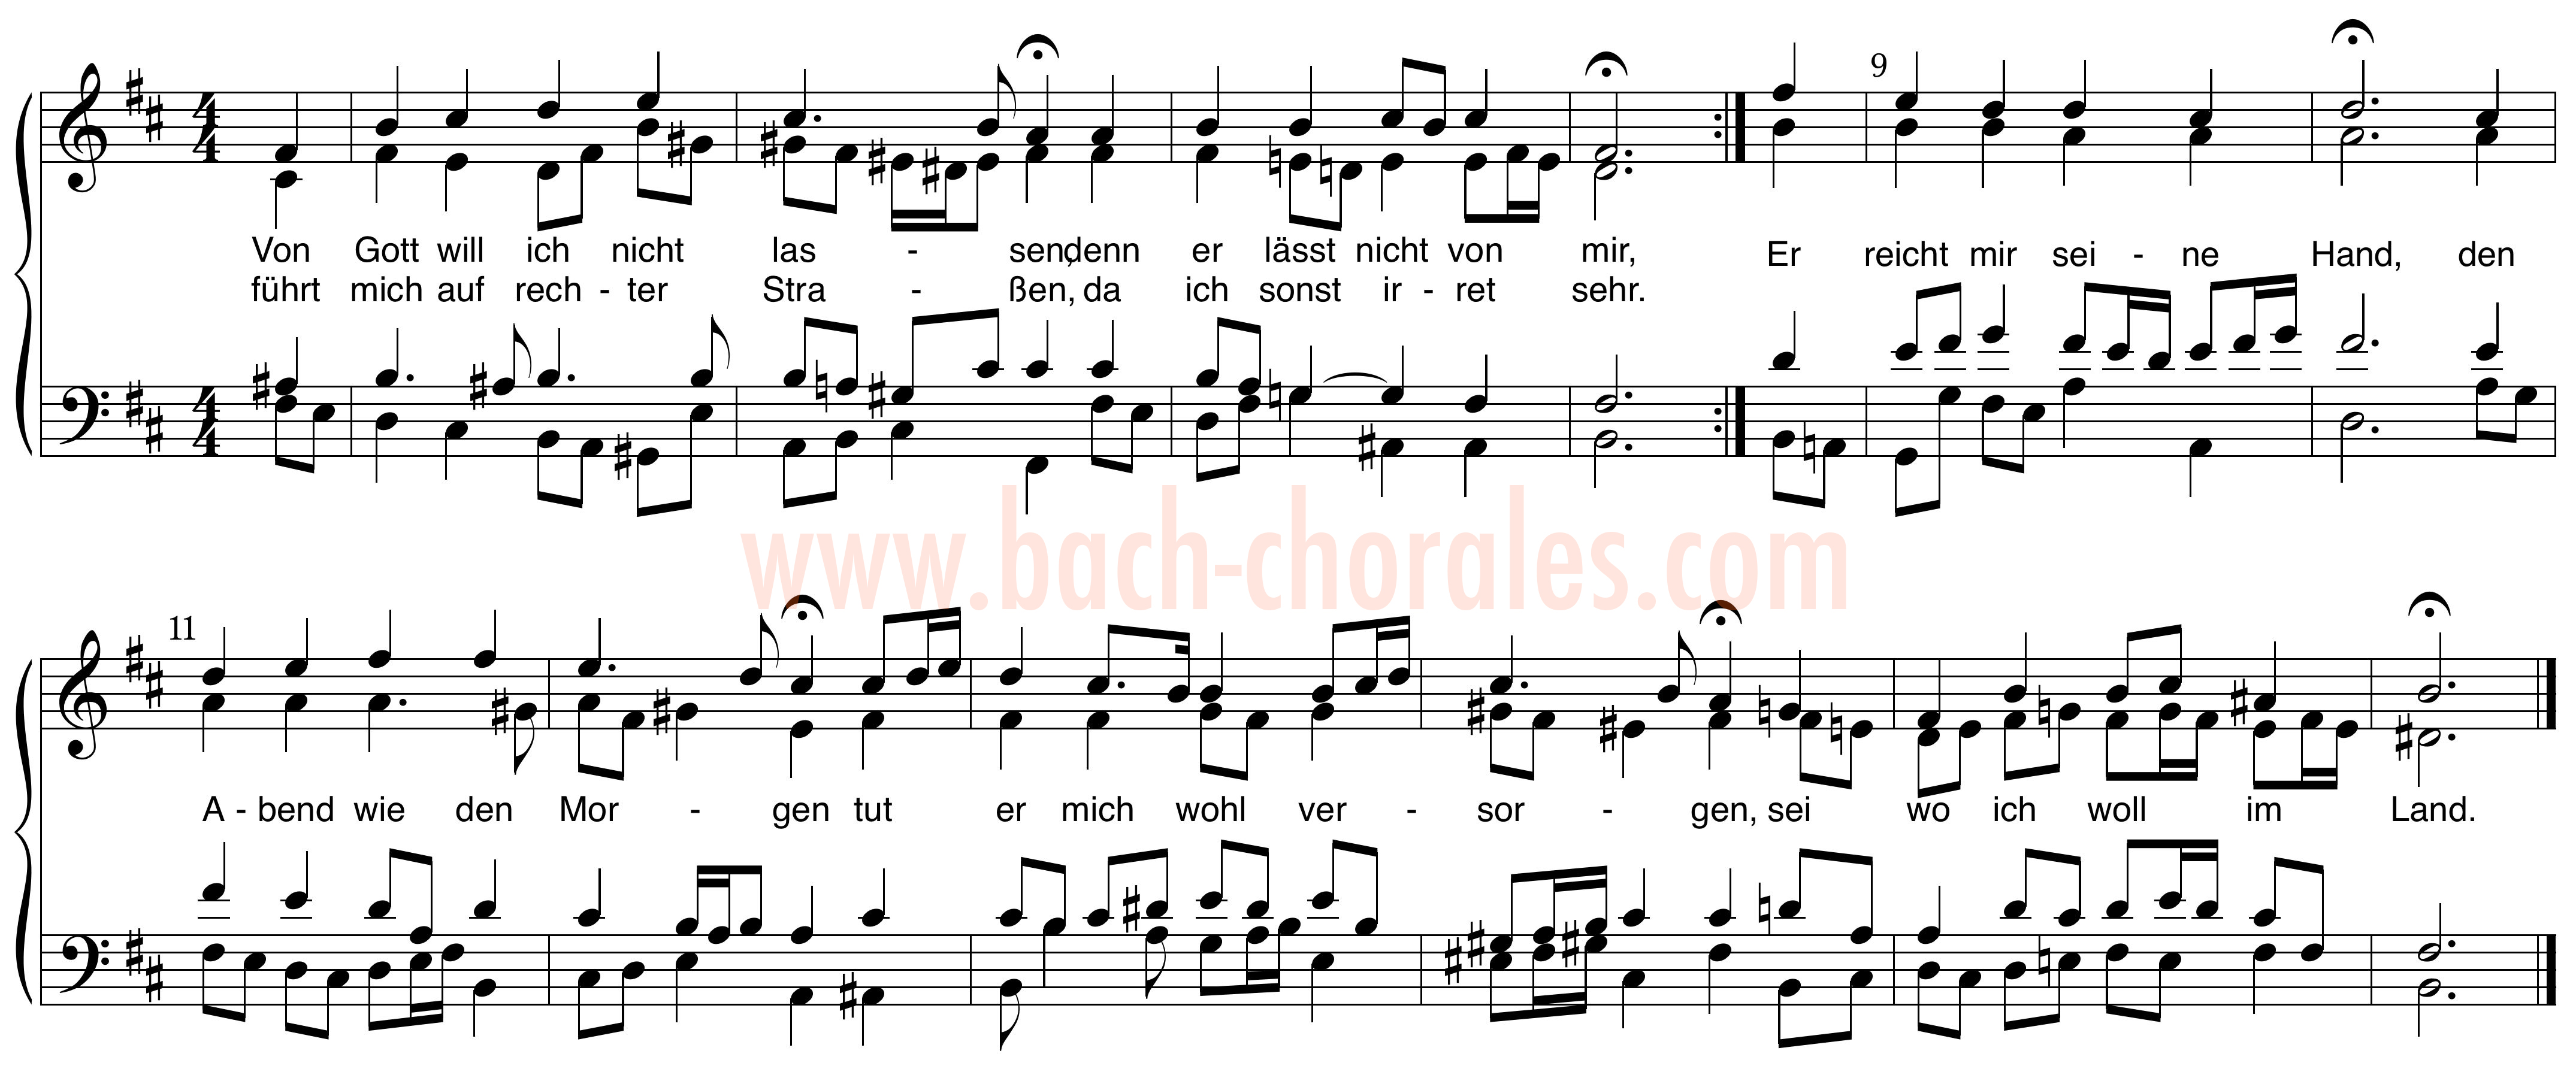 notenbeeld BWV 417 op https://www.bach-chorales.com/